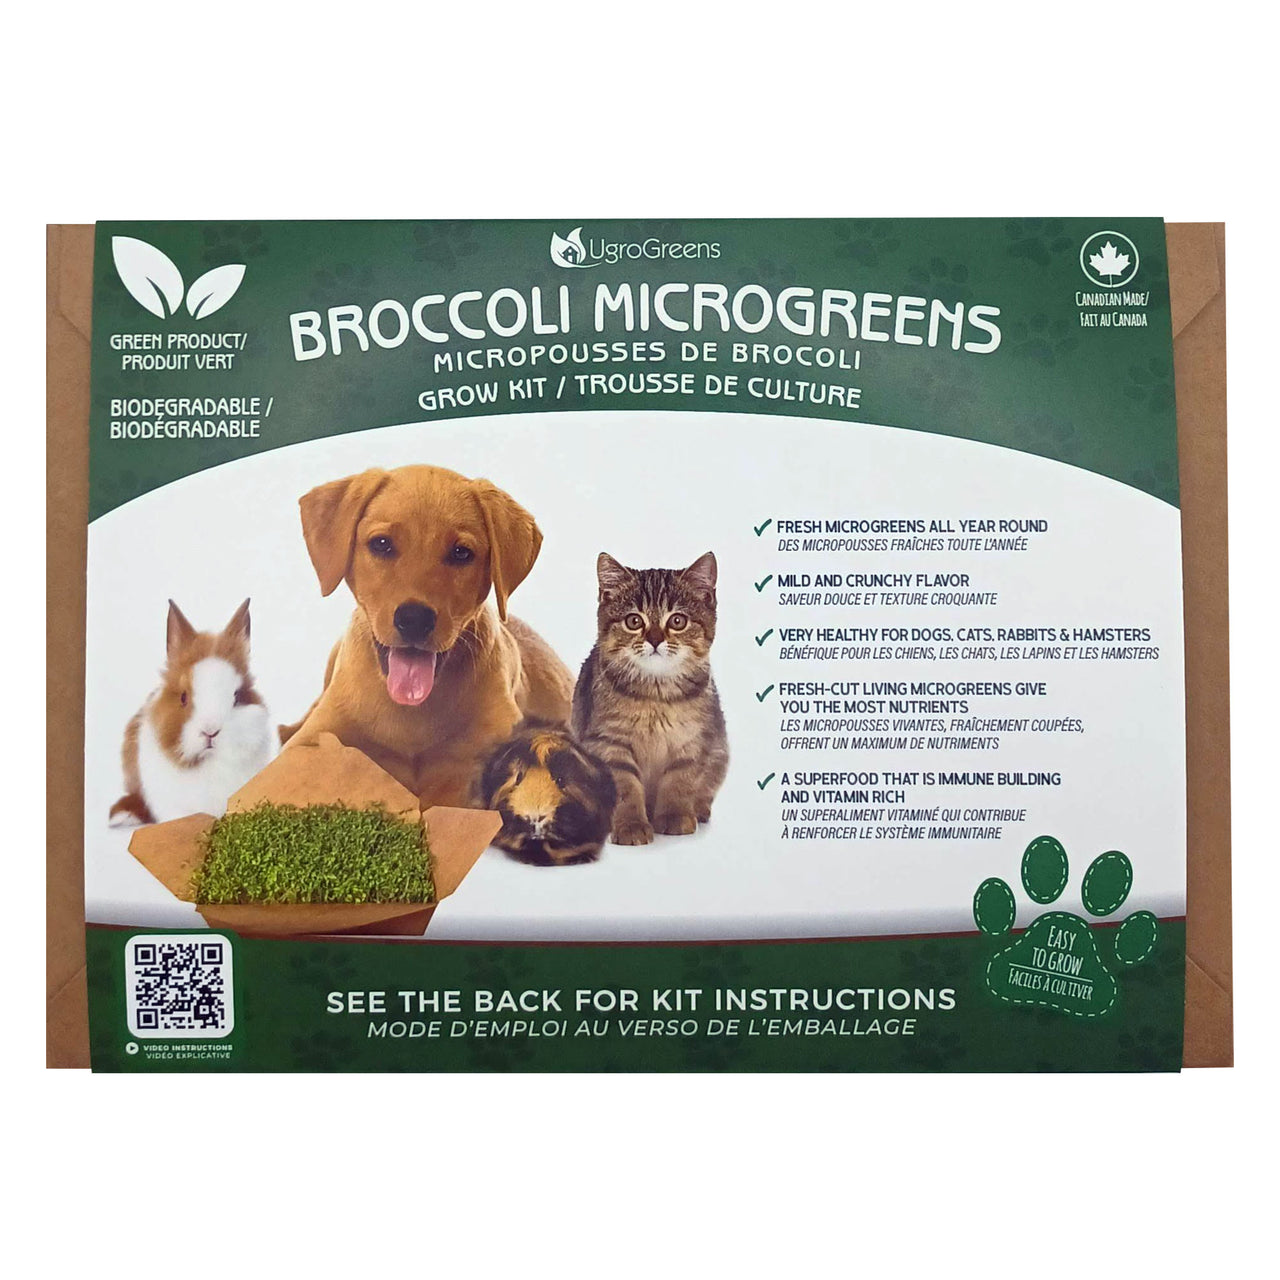 UgroGreens Broccoli Microgreens Grow Kit